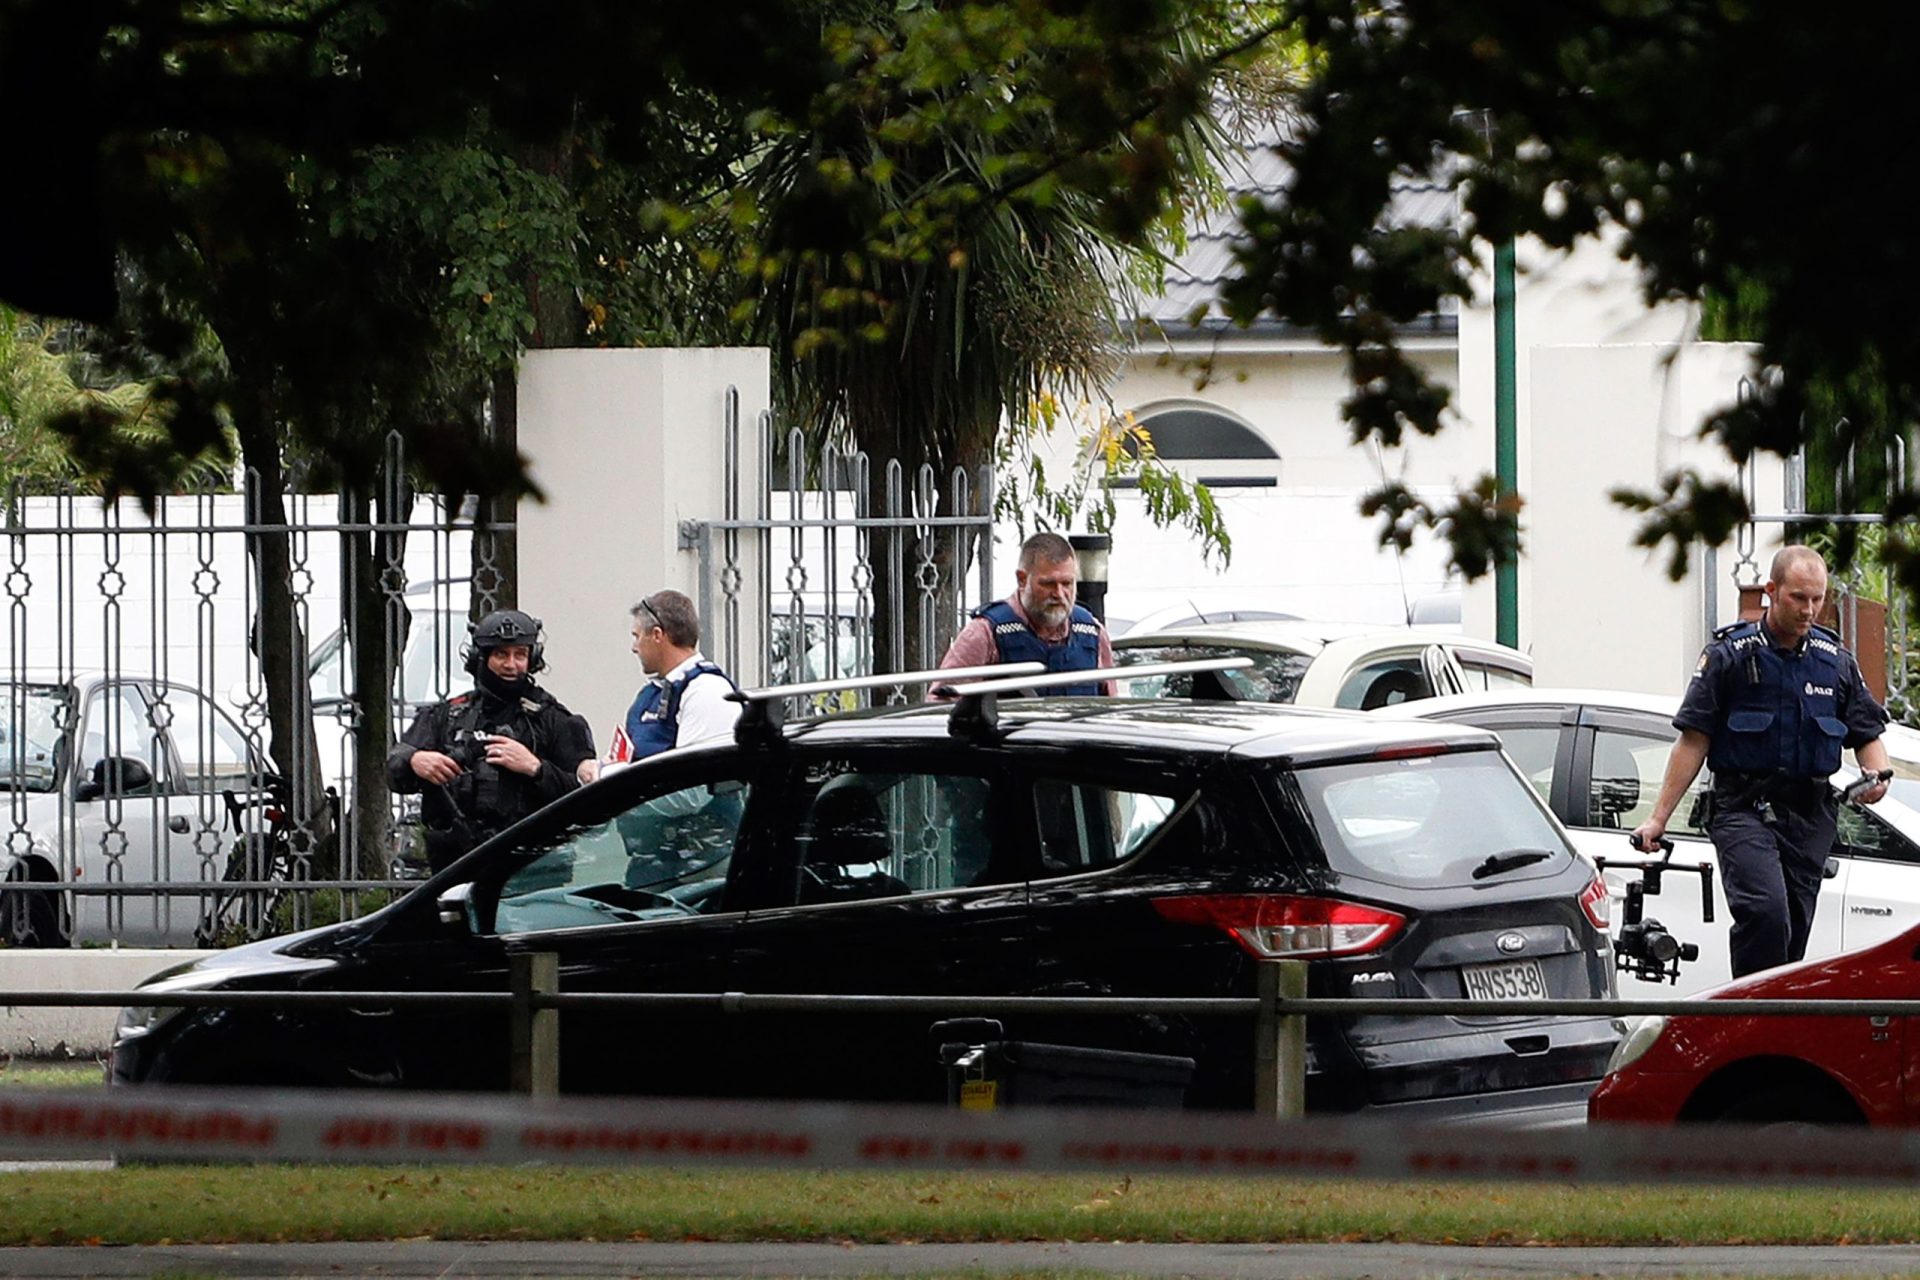 Vídeo mostra momento de detenção de um dos atiradores dos ataques na Nova Zelândia